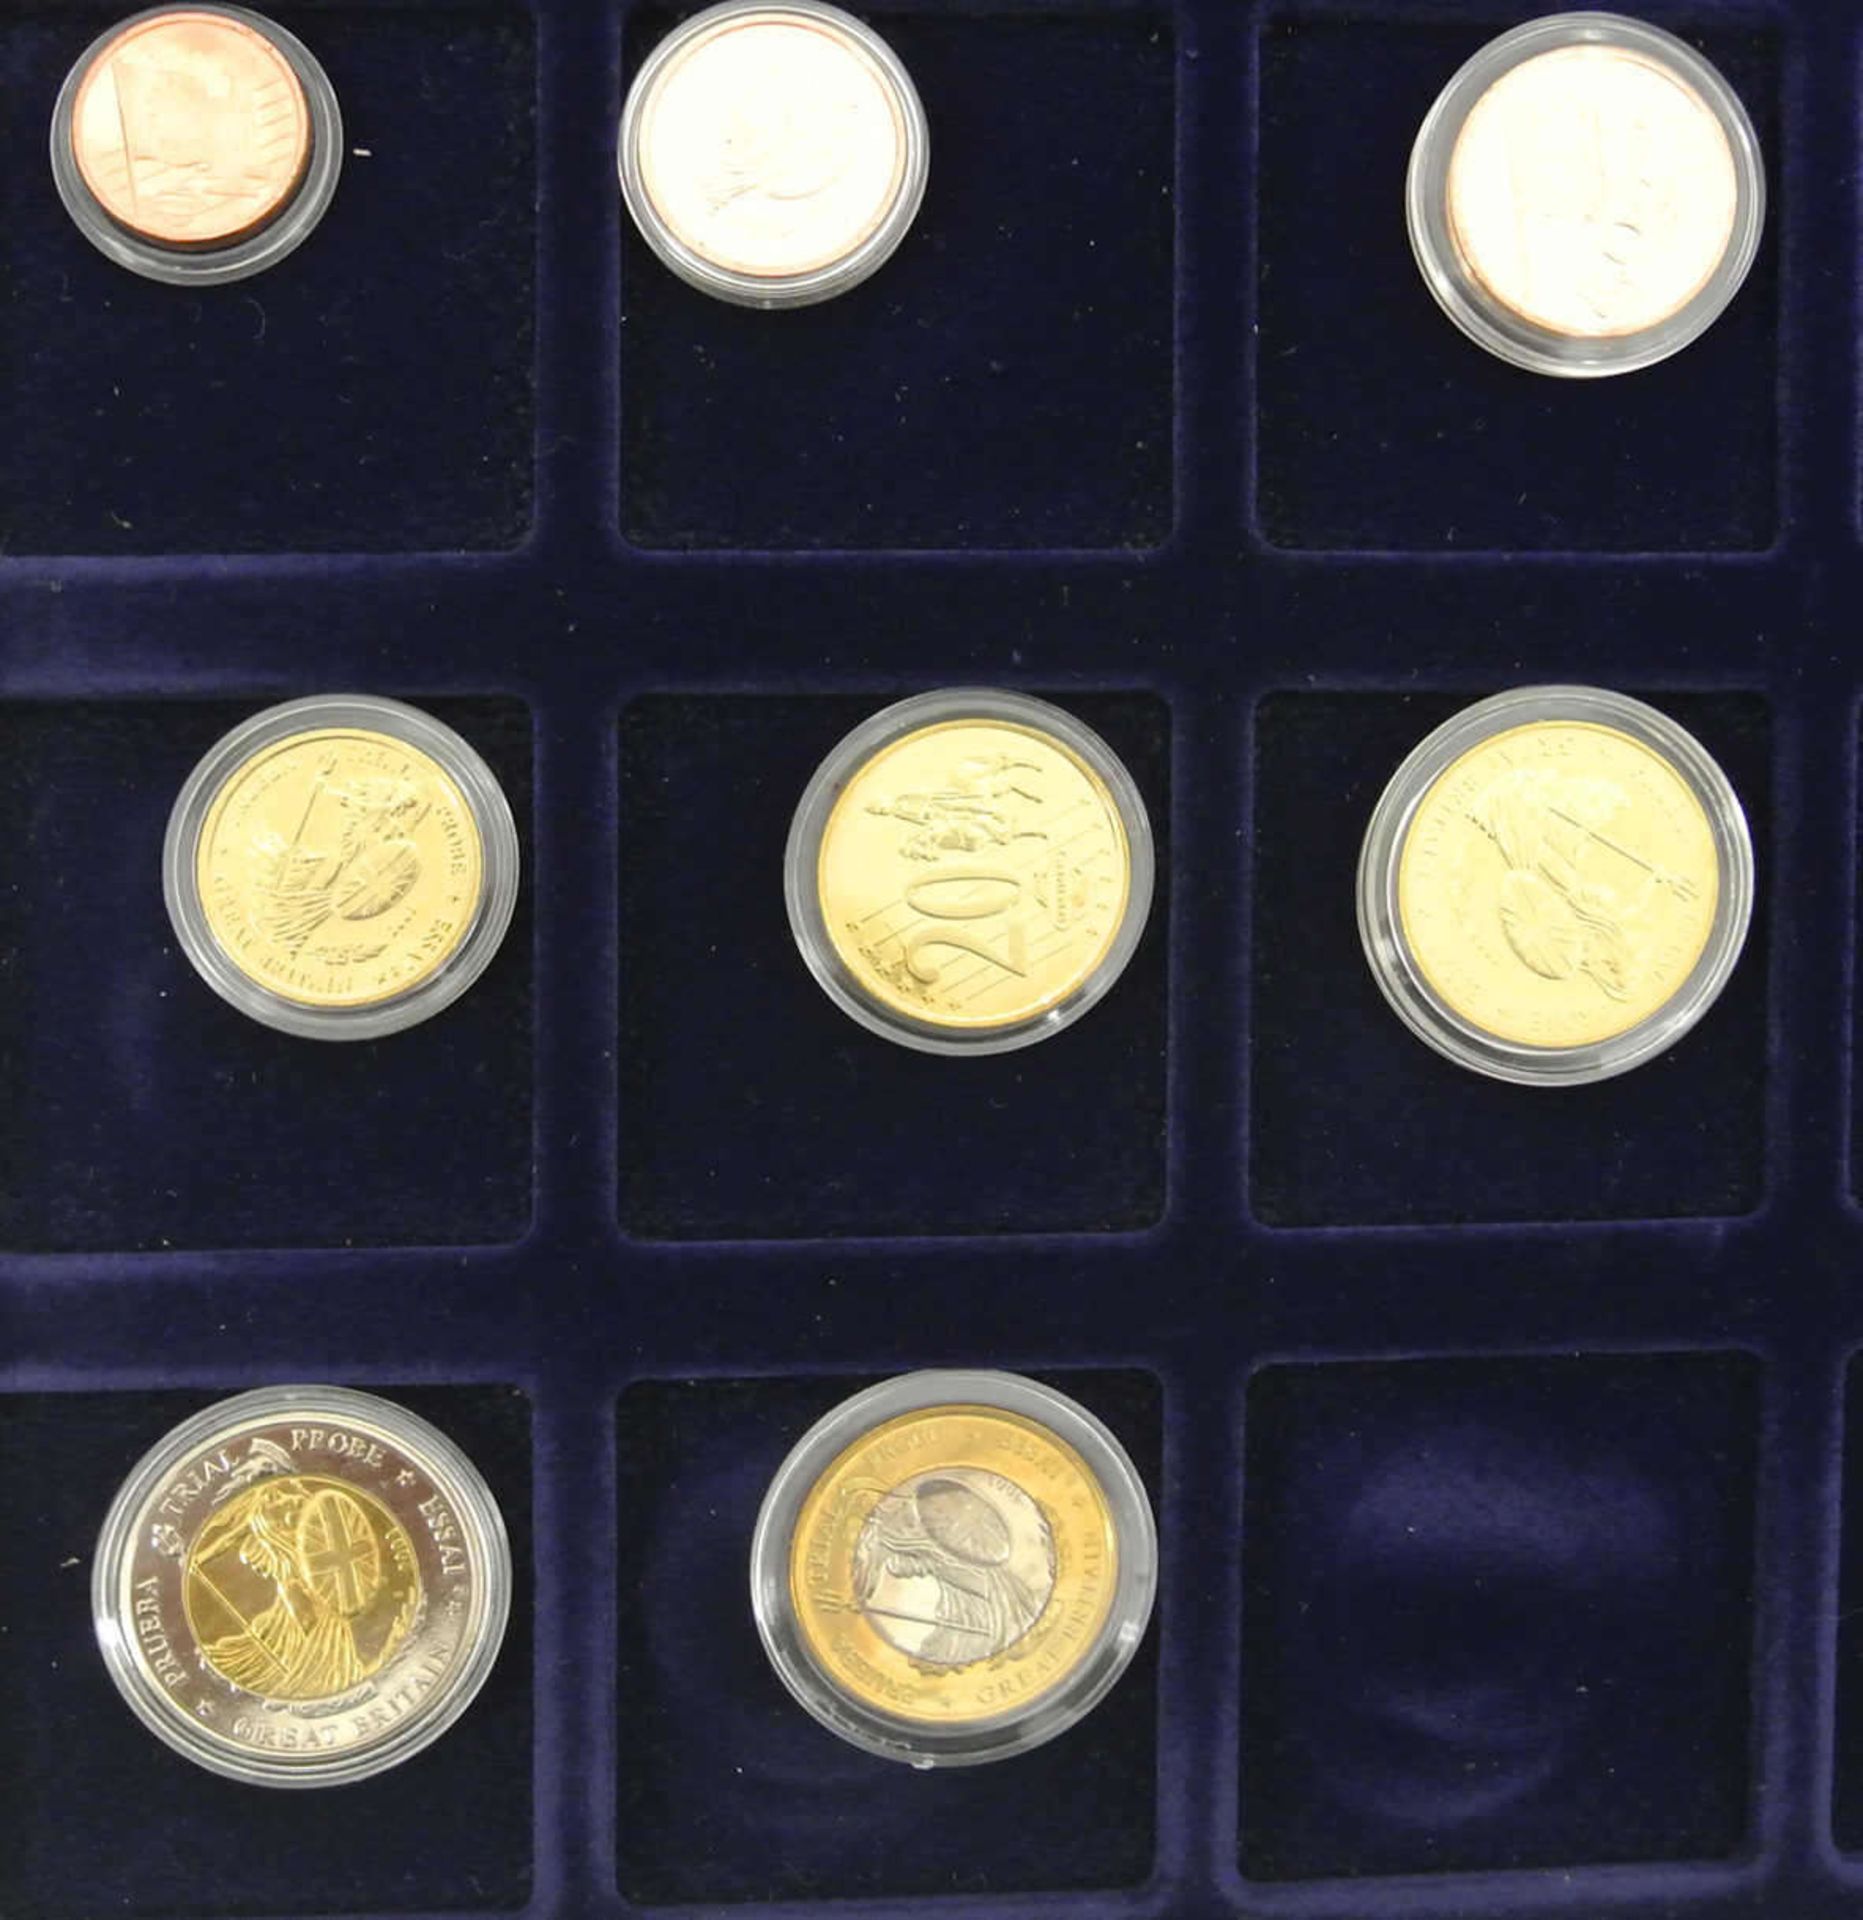 Specimen Großbritannien, Euro-Münzsatz 2003 in einer Holzbox Specimen Great Britain, Euro coin set